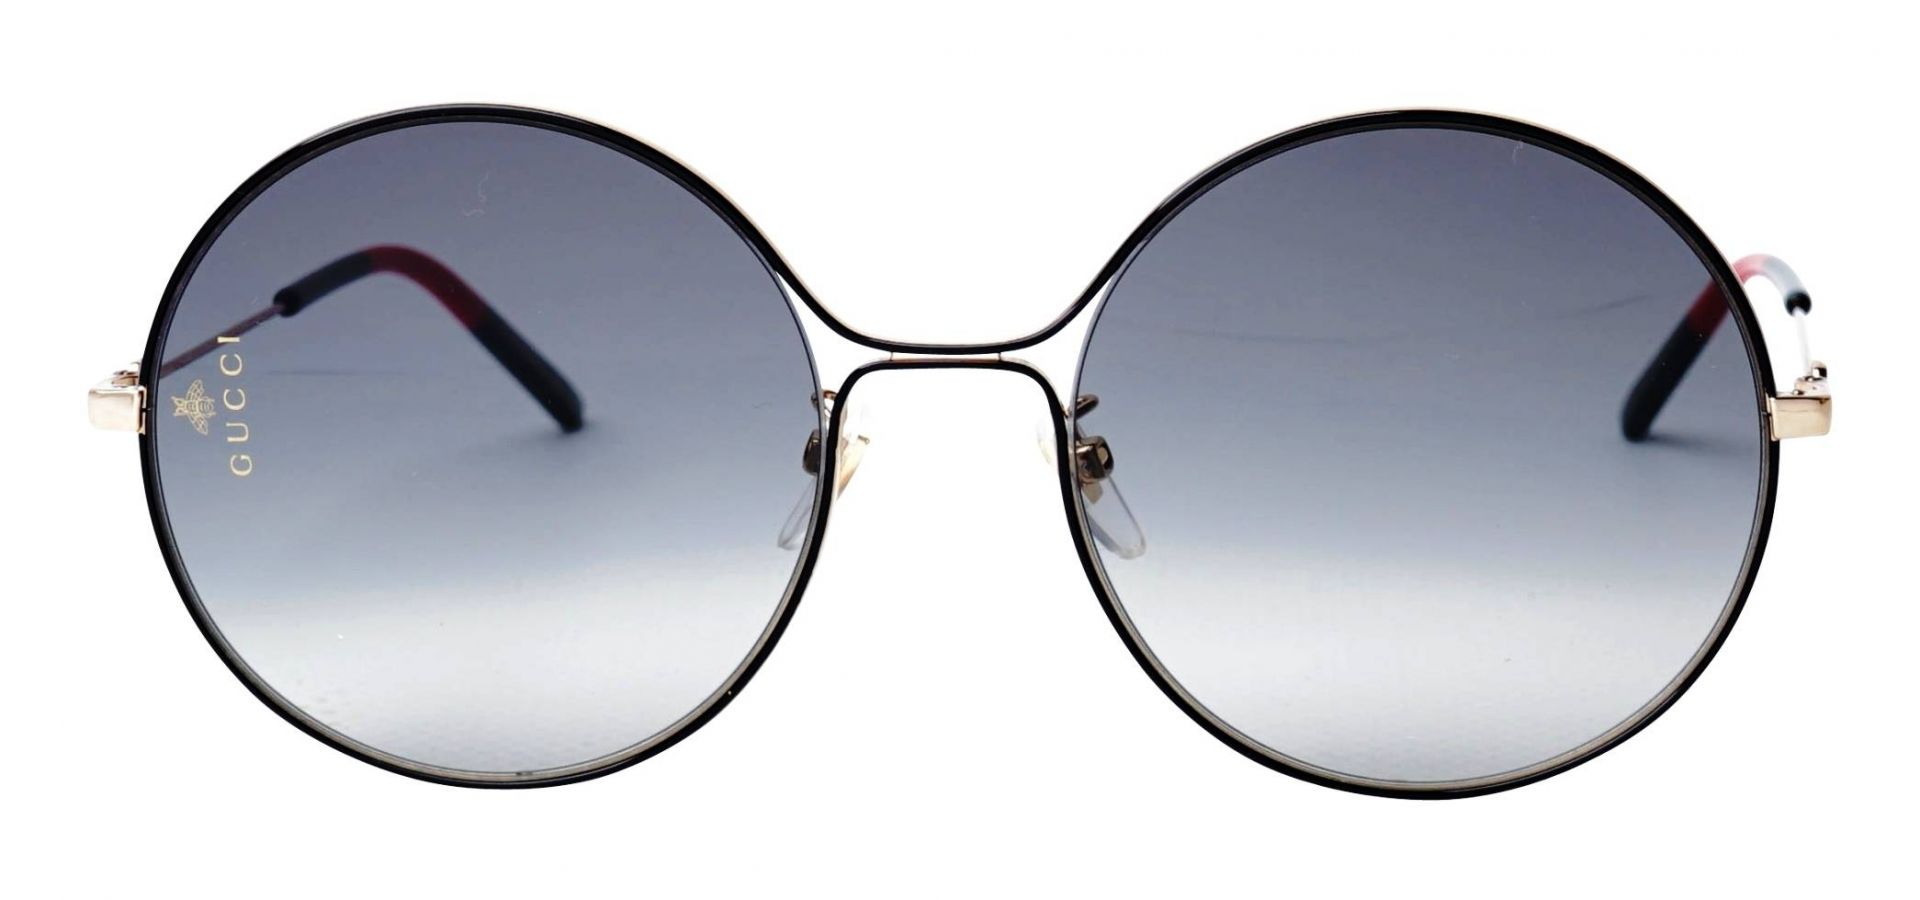 Sončna očala Gucci GG0395S 001 58: Velikost: 58/20/140, Spol: ženska, Material: kovinska